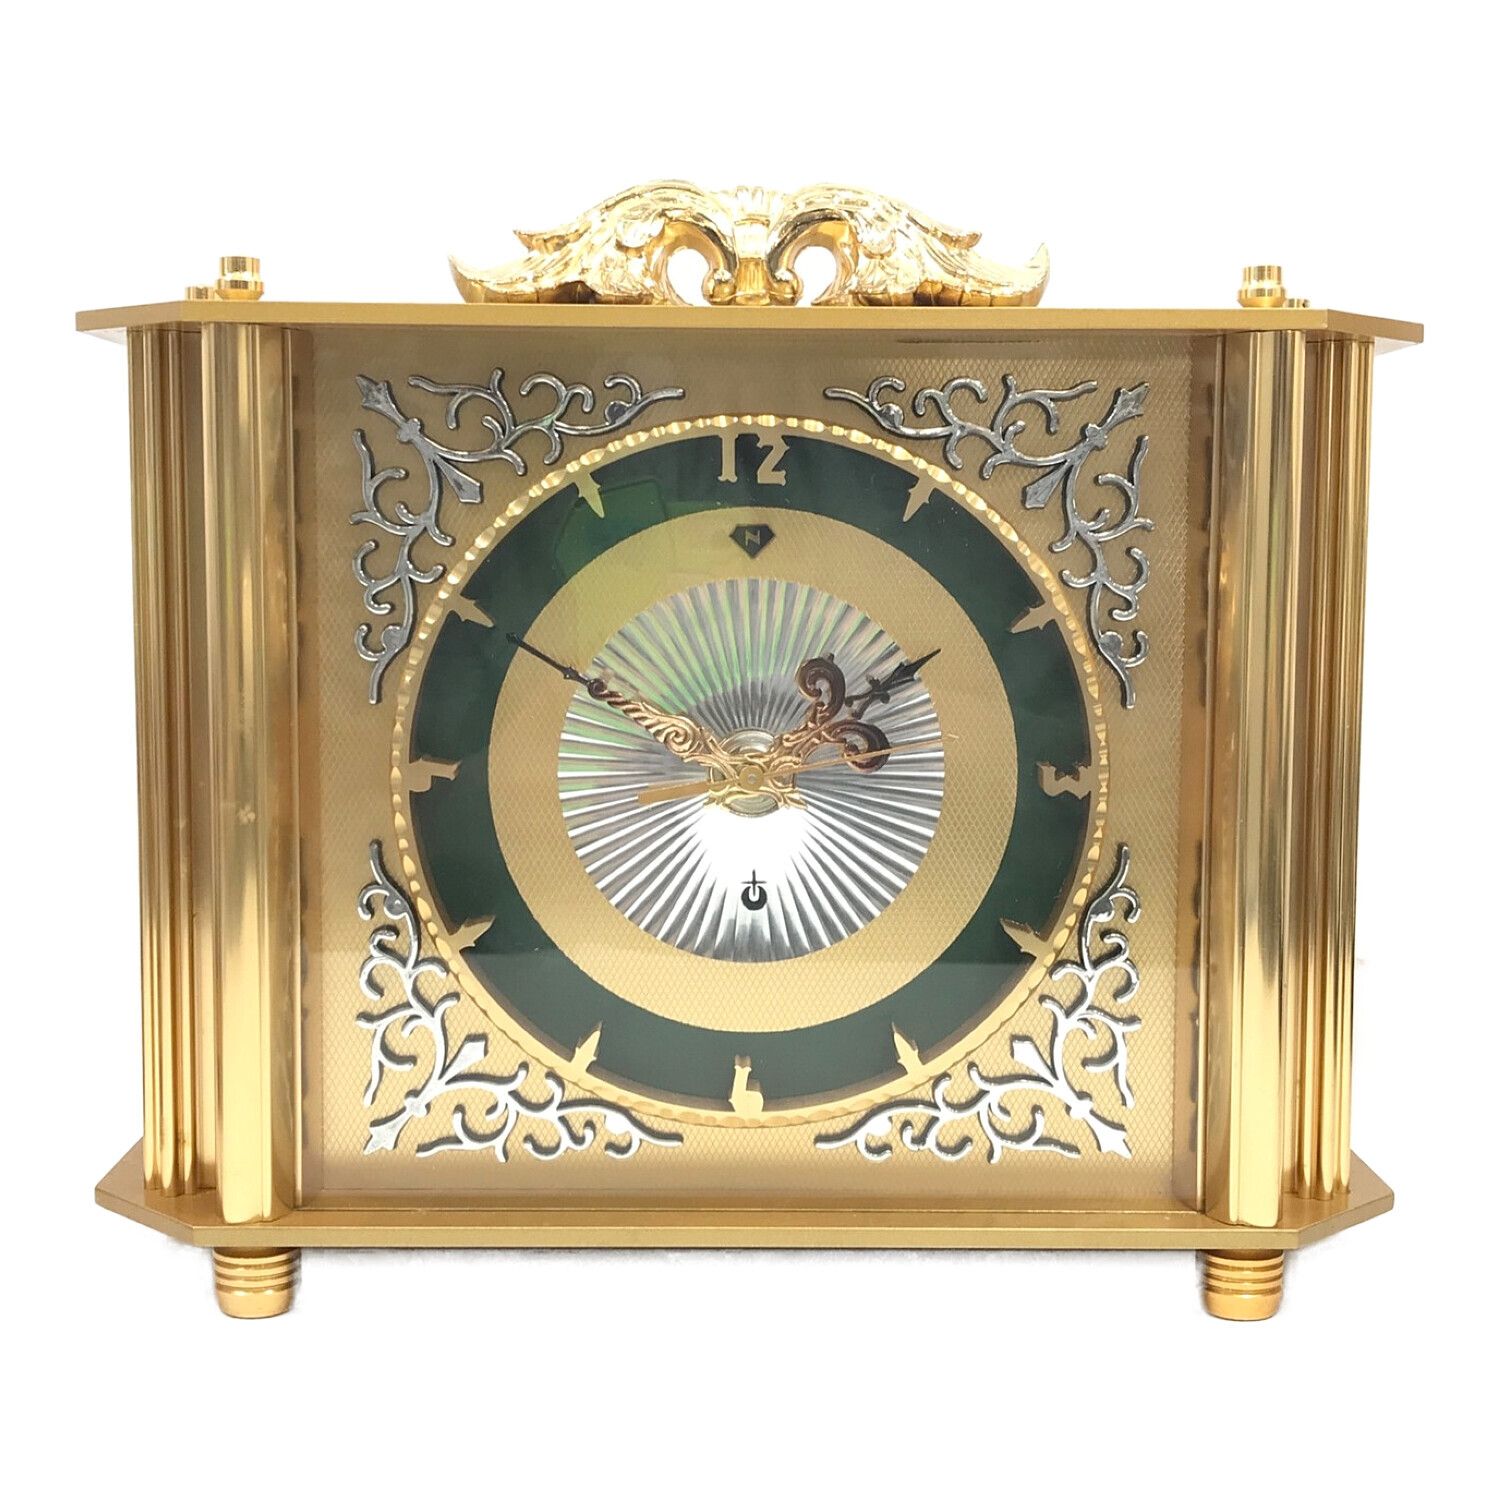 日本美術時計 Nマーク 置時計 ゼンマイ式 【お1人様1点限り】 www